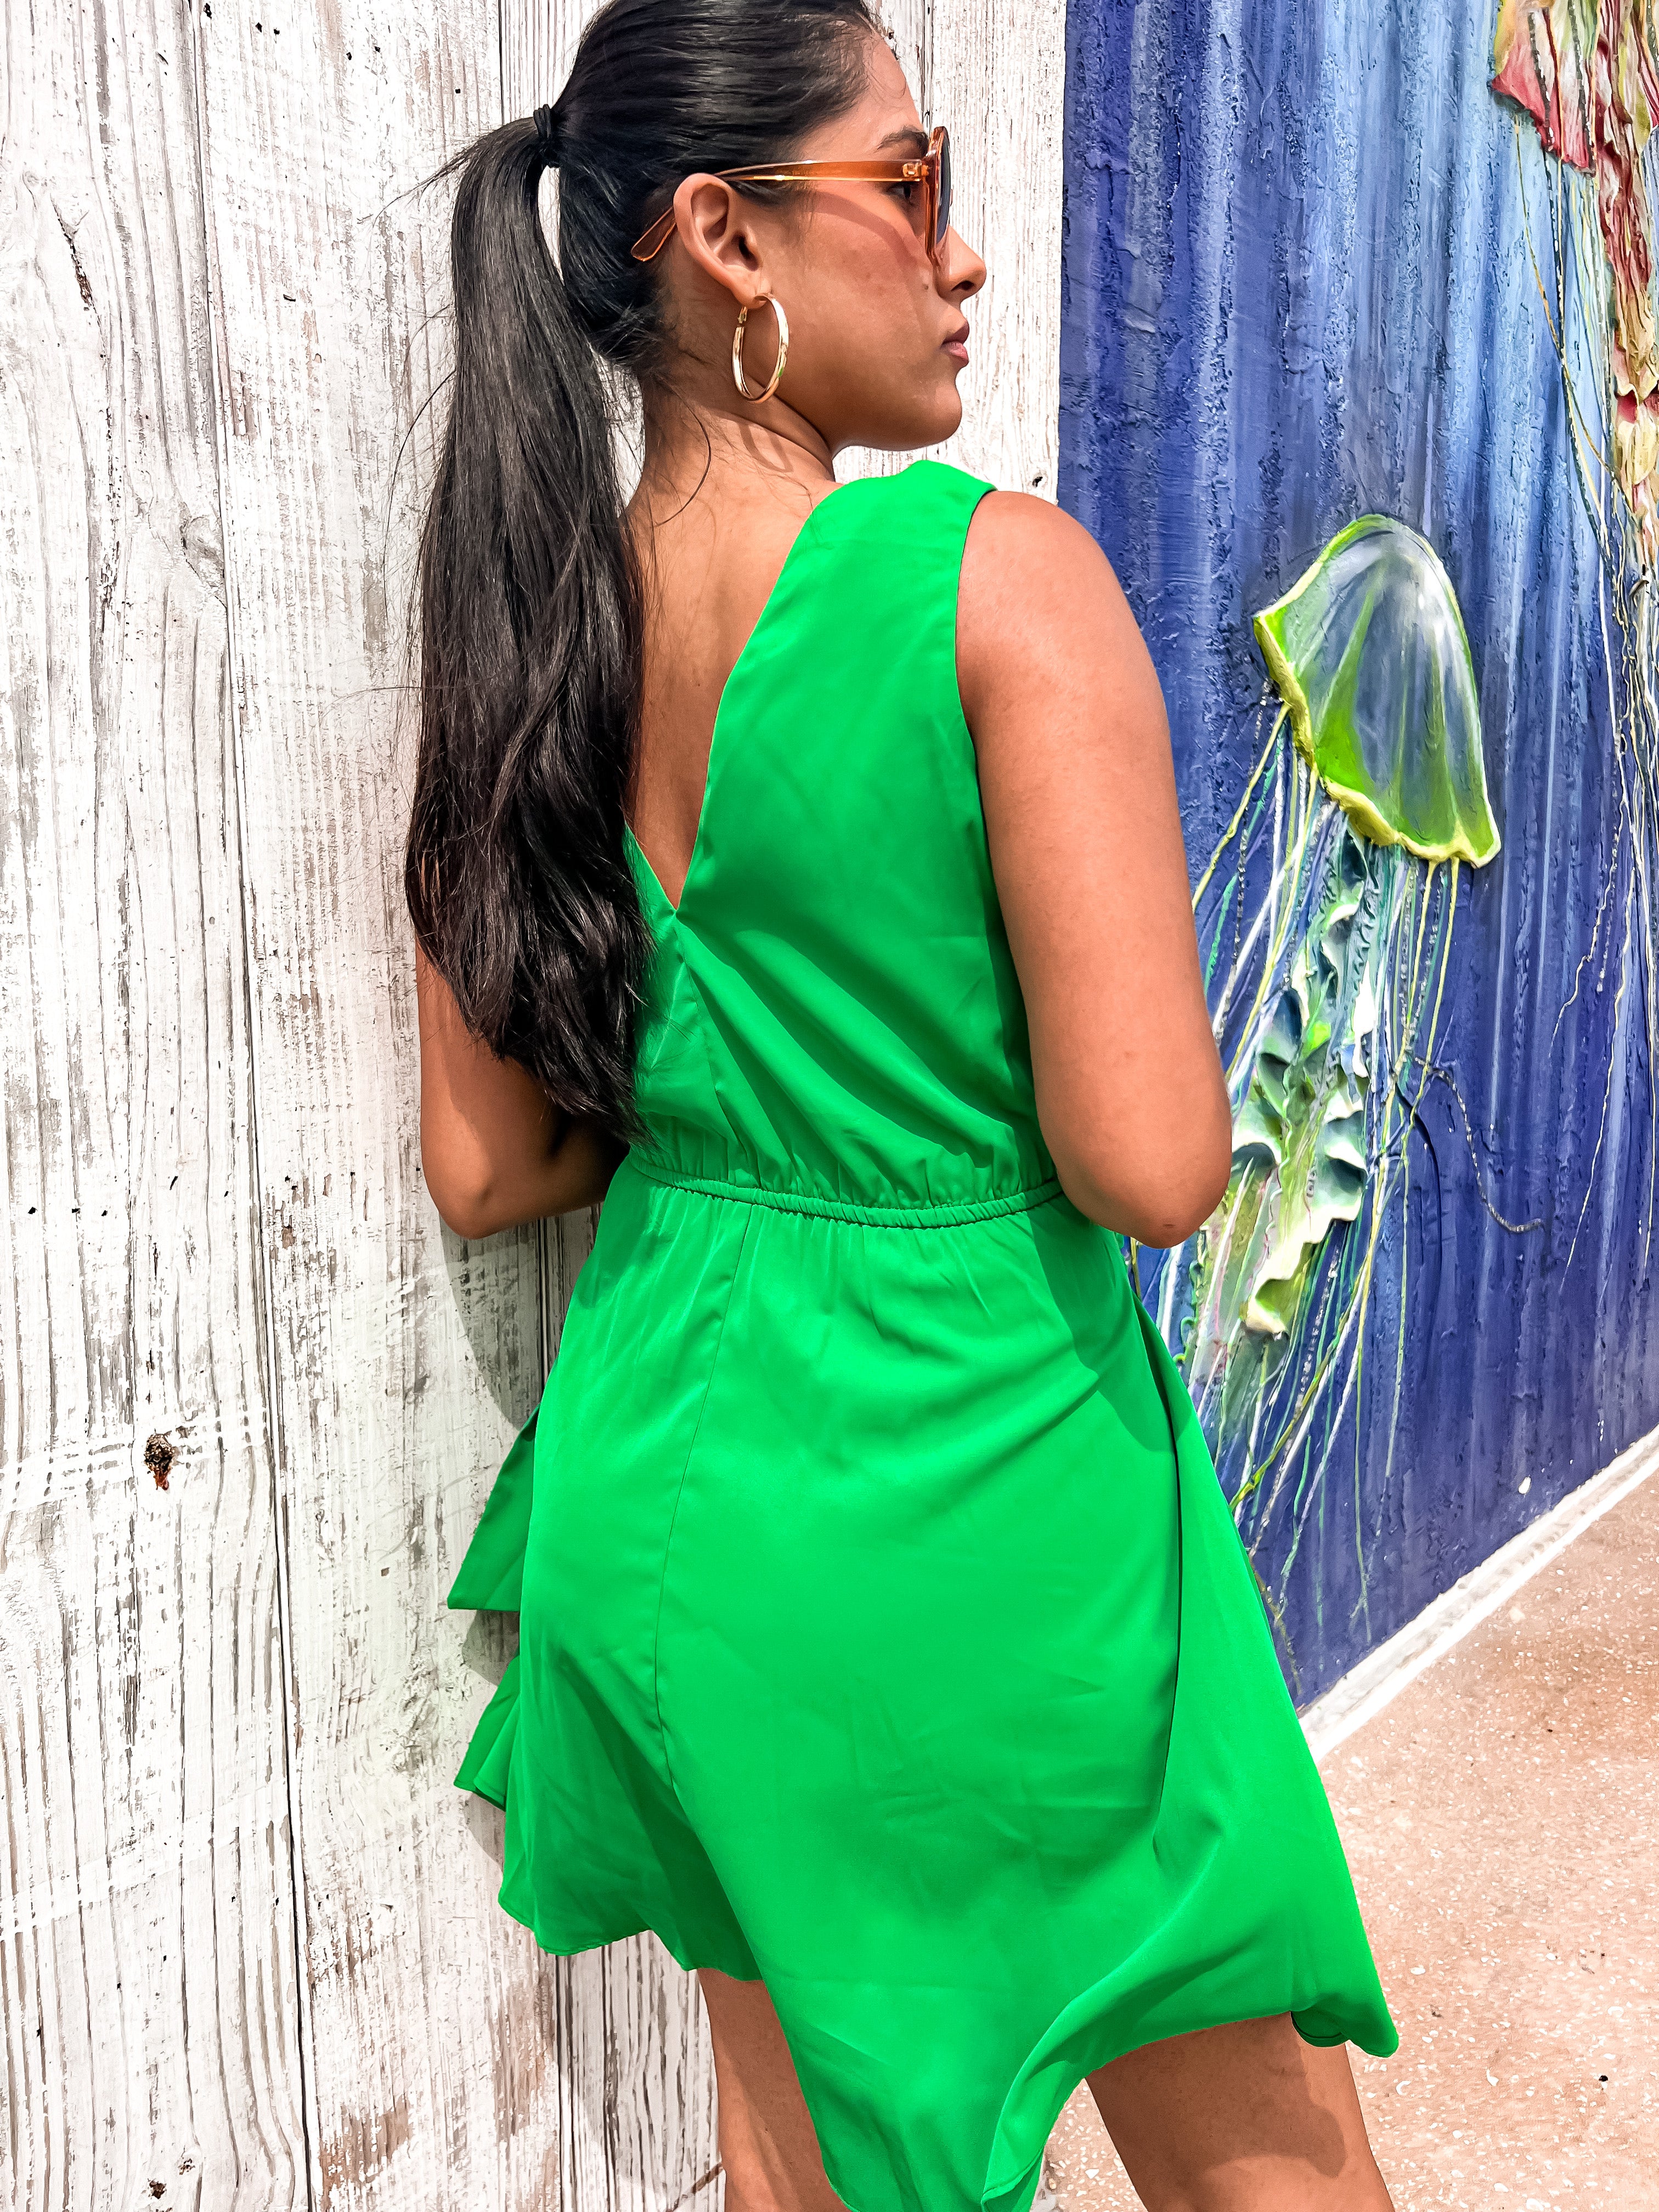 Wedding Guest Green Dress